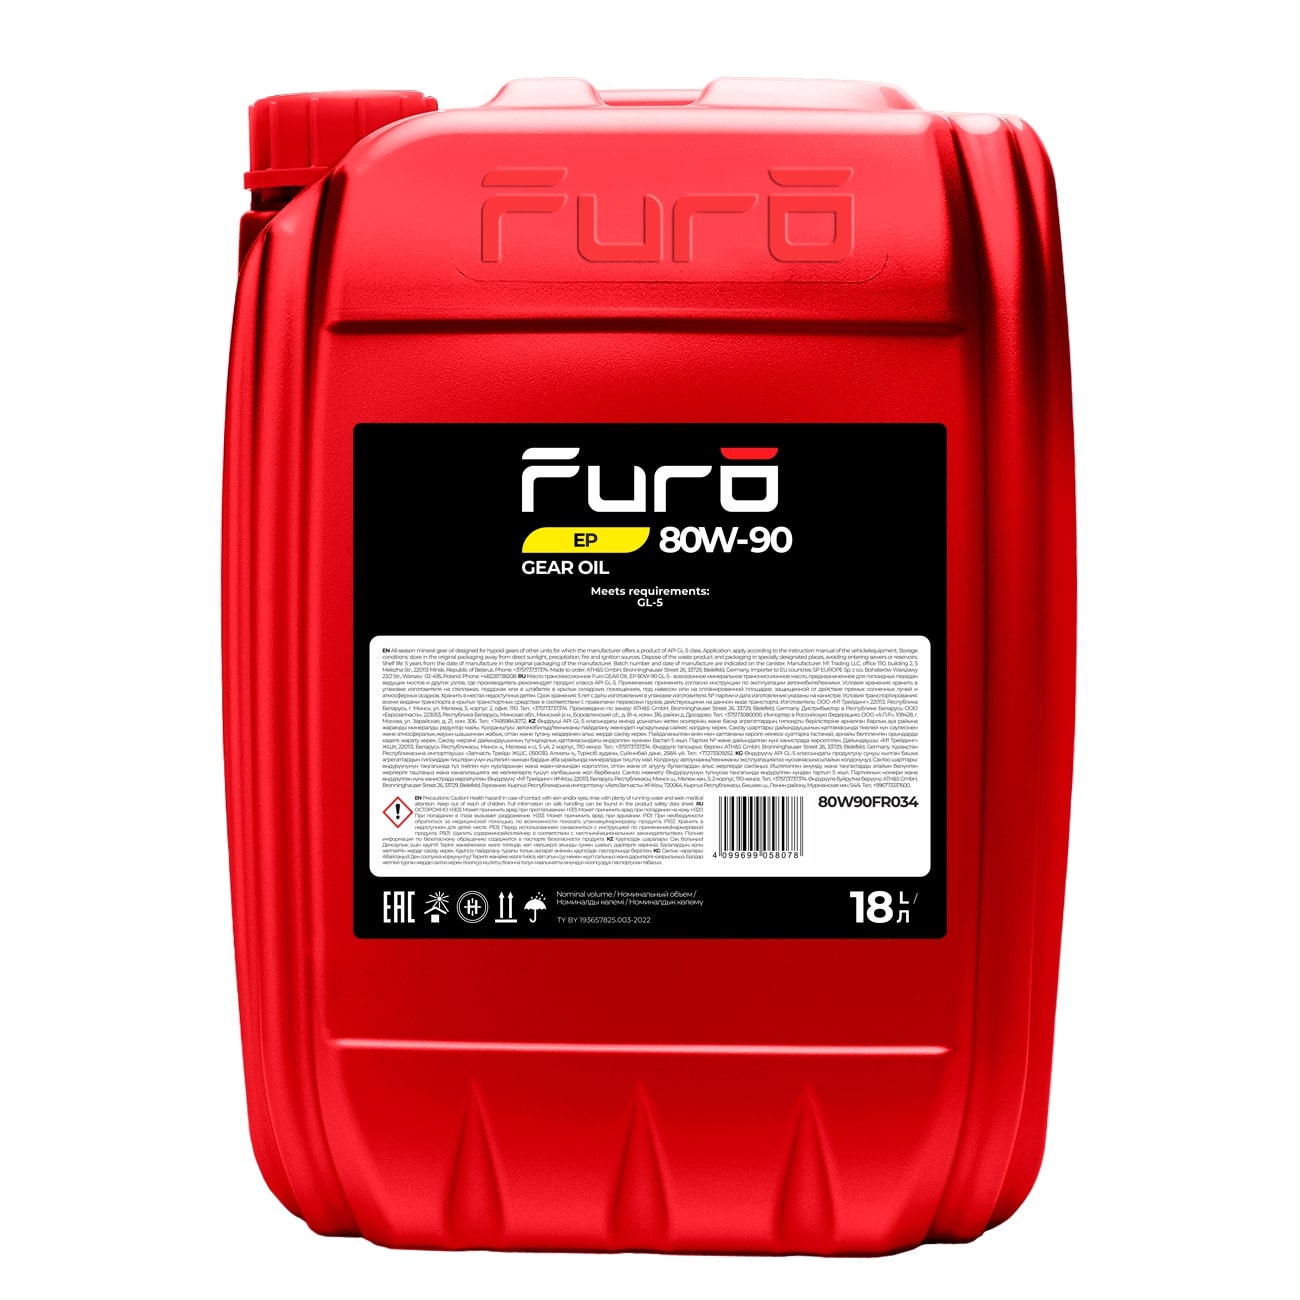 Масло трансмиссионное Furo Gear Oil EP 80W-90 GL-5 18 л 80W90FR034, Масла трансмиссионные